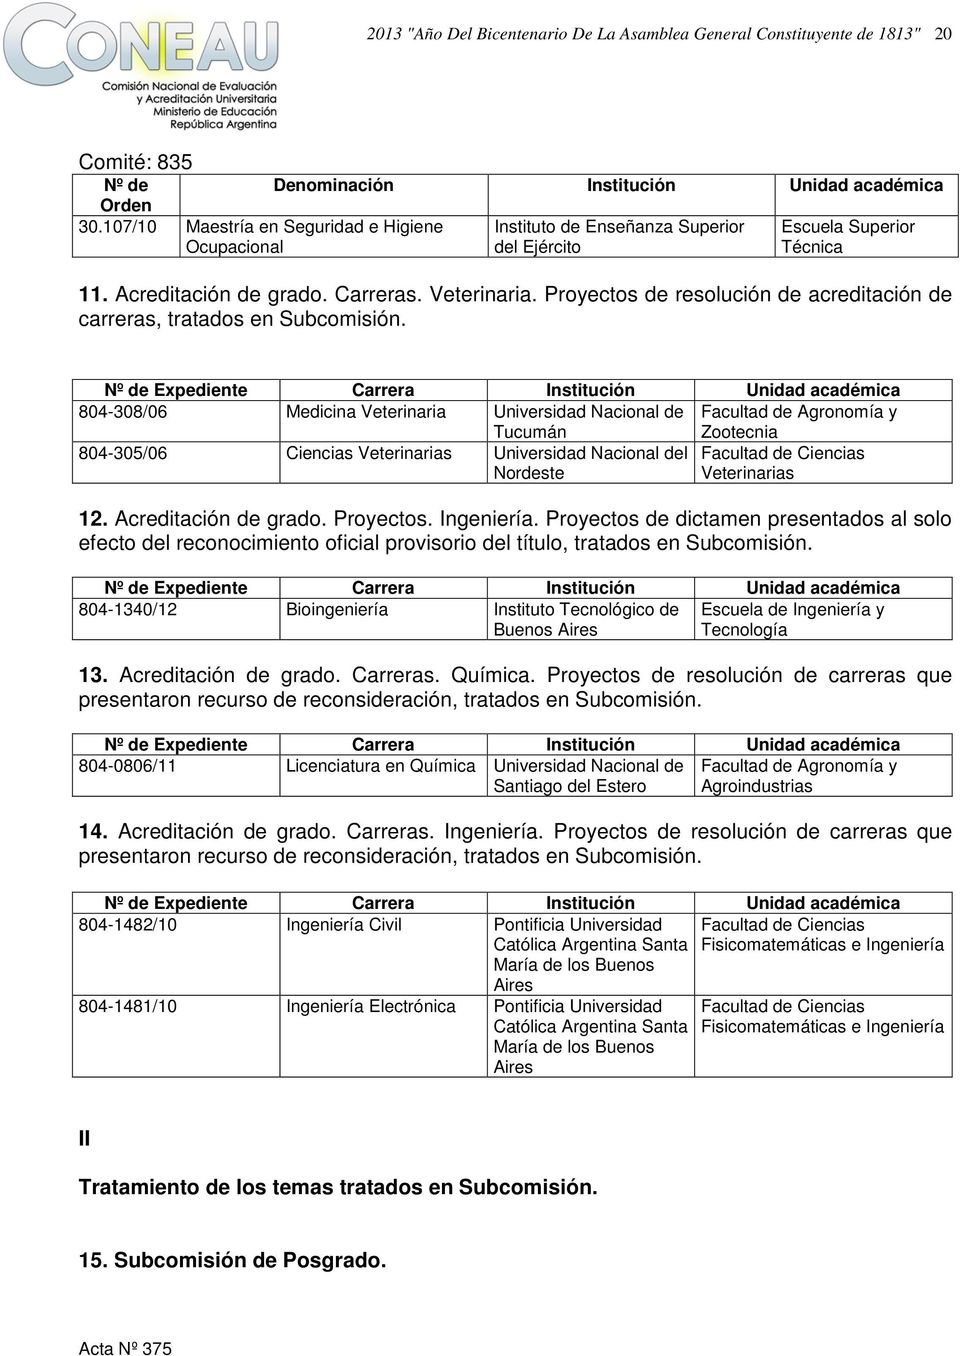 Expediente Carrera Institución Unidad 804-308/06 Medicina Veterinaria Nacional de Tucumán Agronomía y Zootecnia 804-305/06 Ciencias Veterinarias Nacional del Ciencias Nordeste Veterinarias 12.